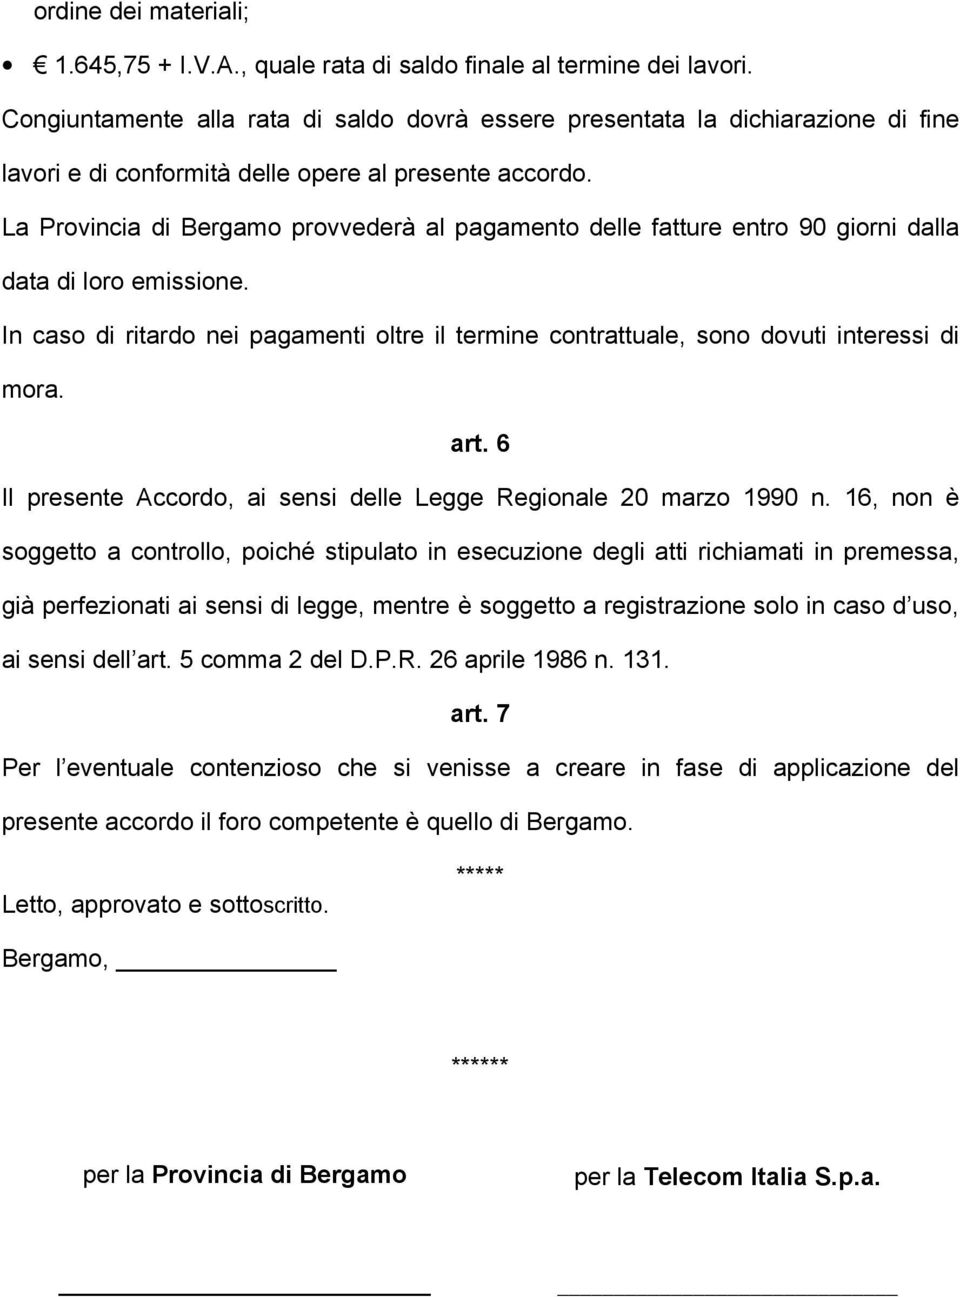 La Provincia di Bergamo provvederà al pagamento delle fatture entro 90 giorni dalla data di loro emissione.